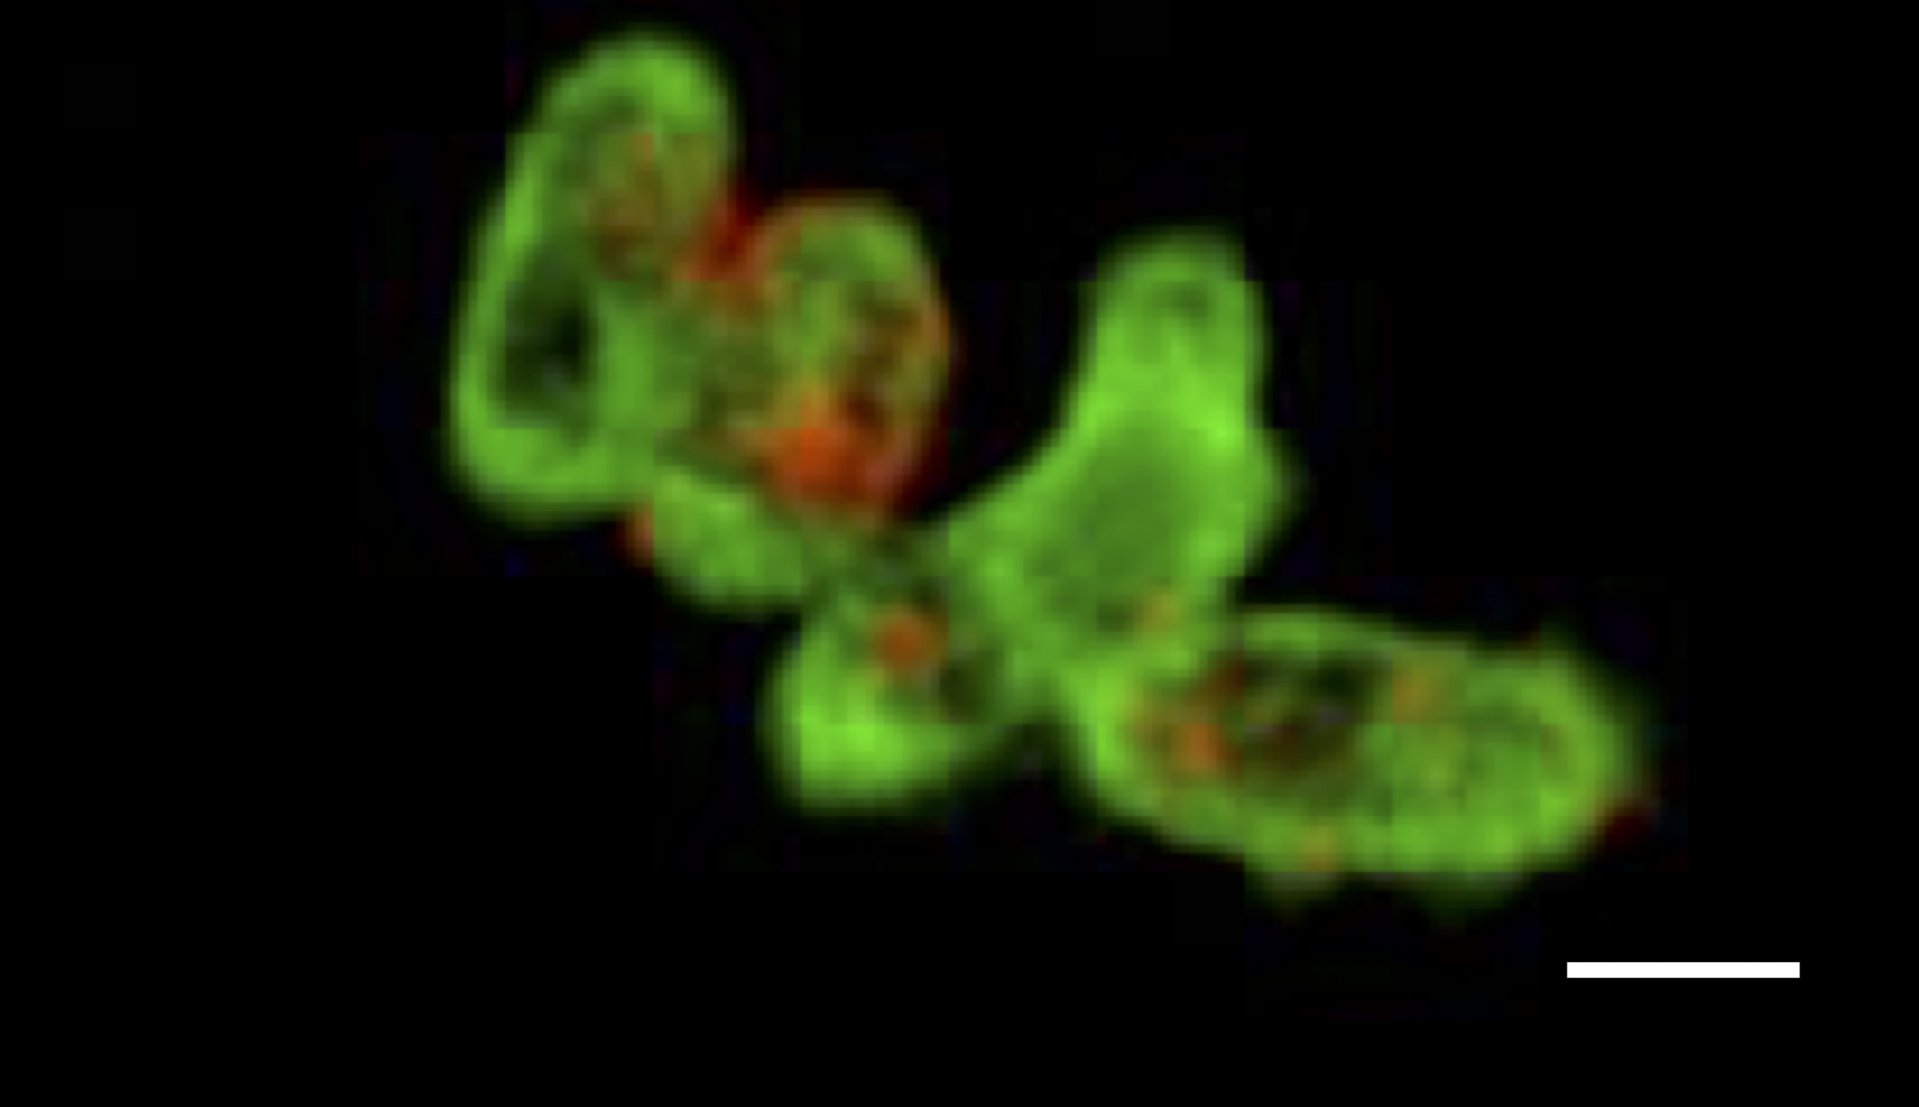 Burst of Pseudoalteromonas cells